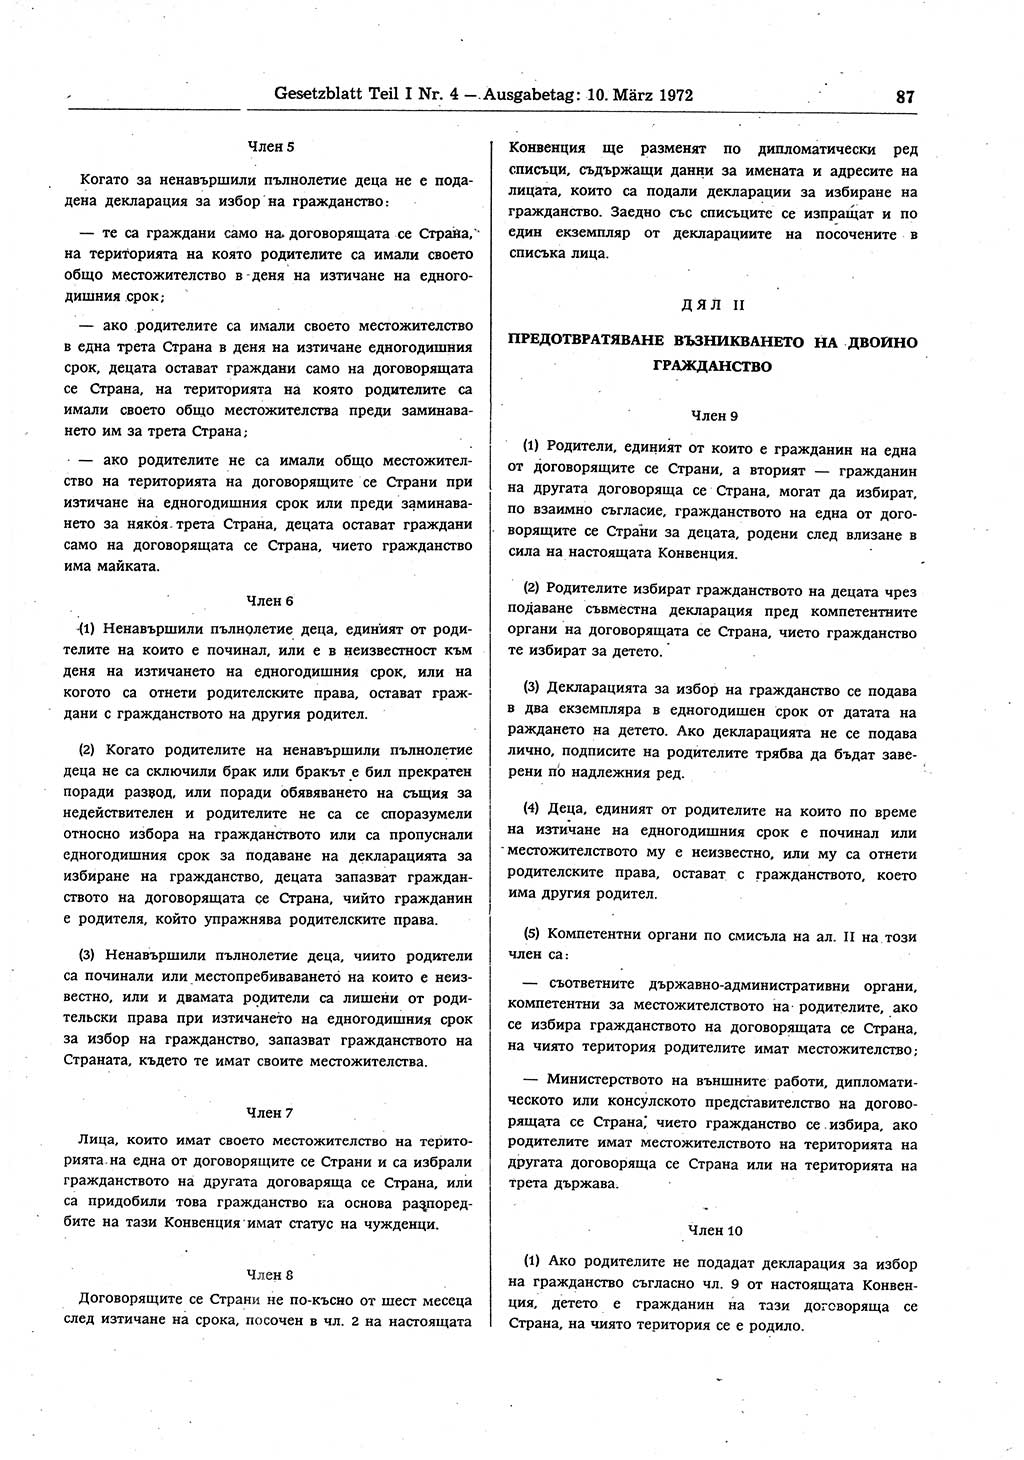 Gesetzblatt (GBl.) der Deutschen Demokratischen Republik (DDR) Teil Ⅰ 1972, Seite 87 (GBl. DDR Ⅰ 1972, S. 87)